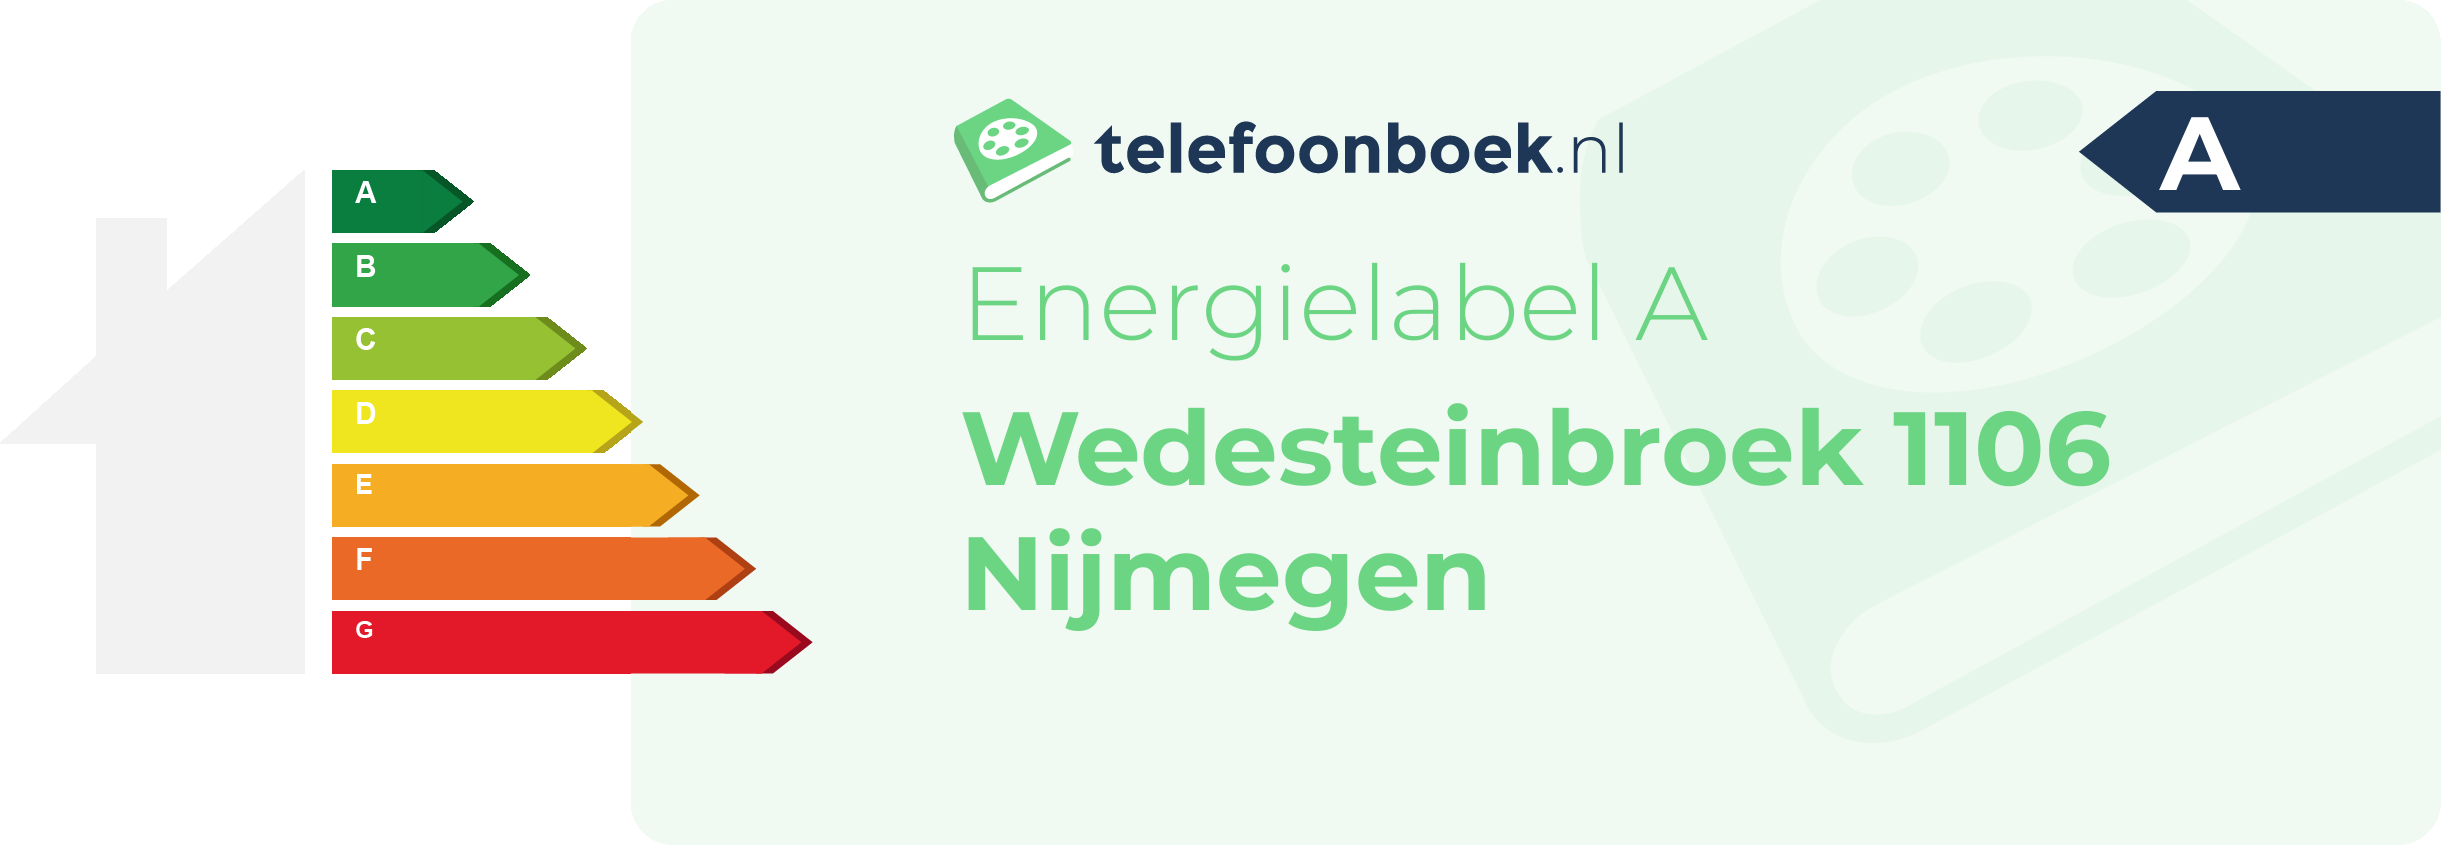 Energielabel Wedesteinbroek 1106 Nijmegen